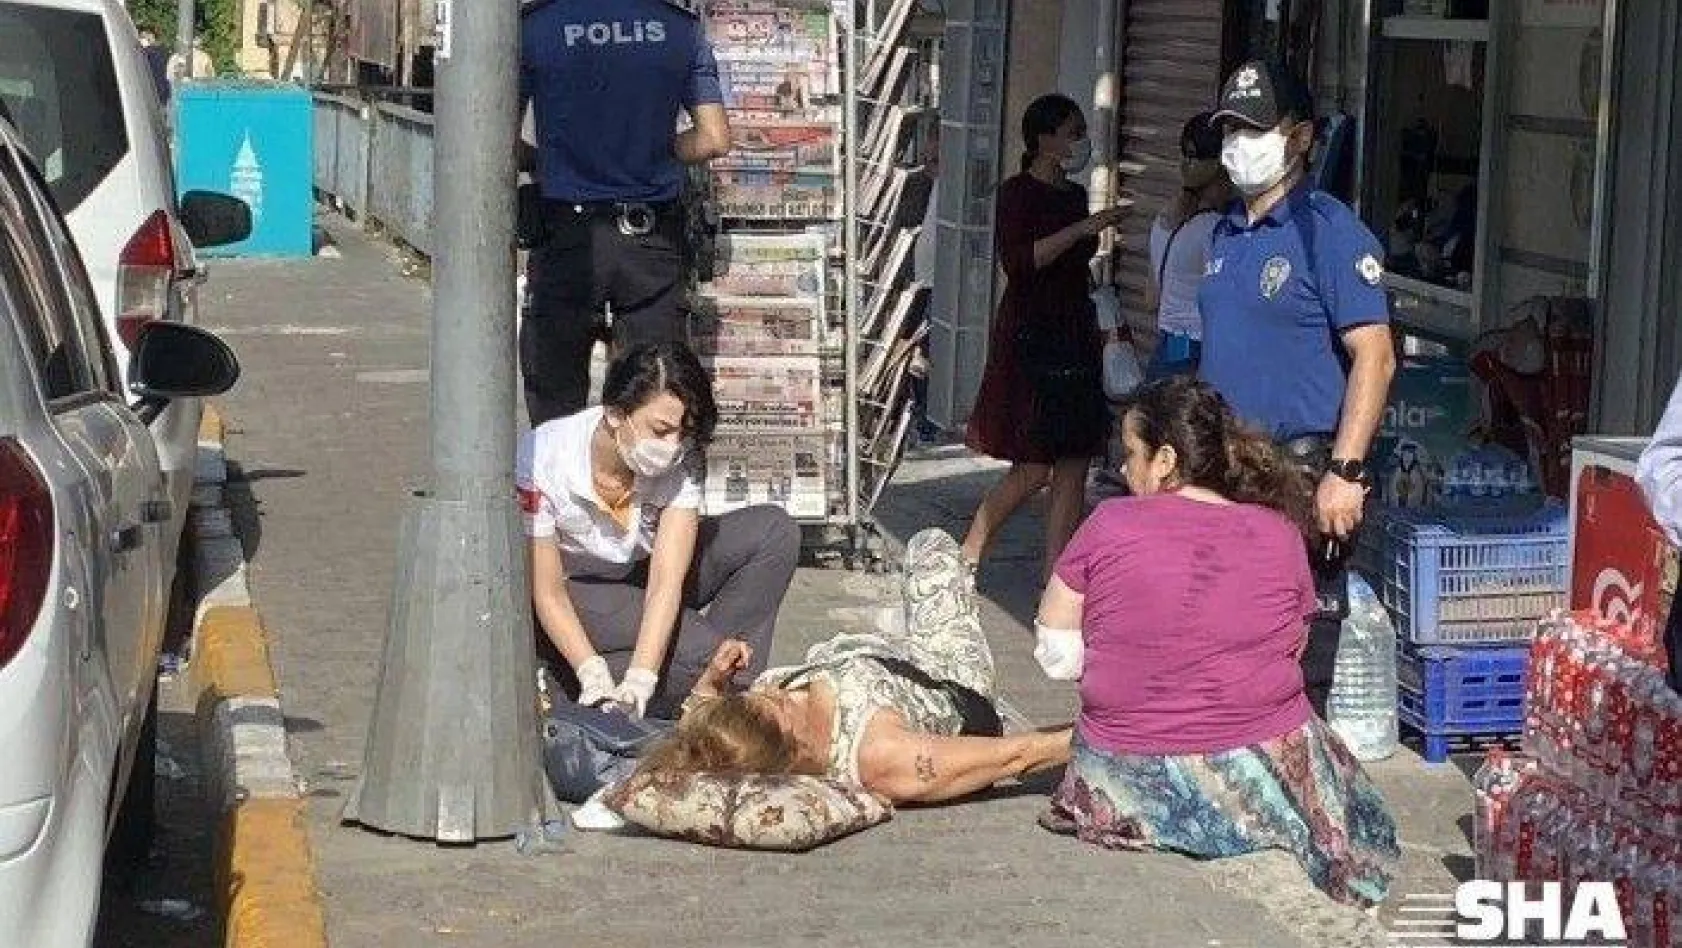 İstanbul'un göbeğinde kadına silahlı saldırı dehşeti